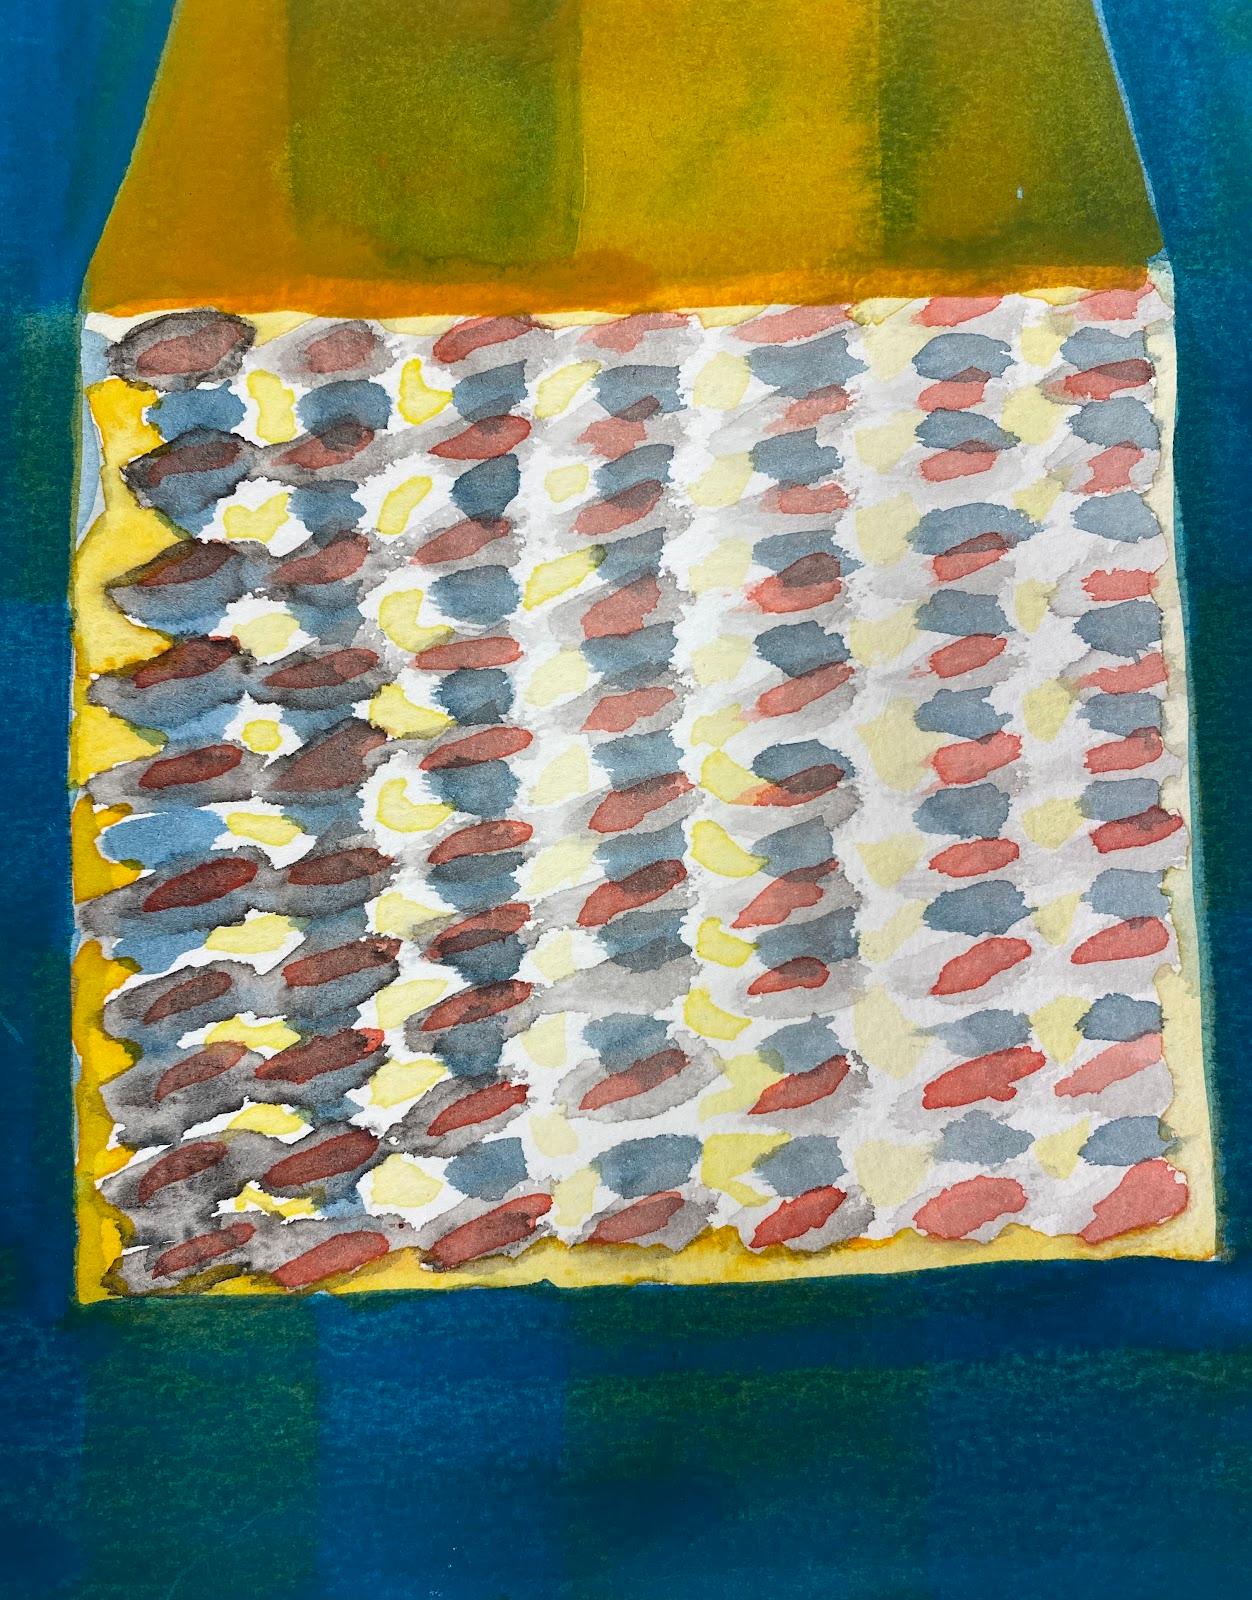 Composition expressionniste abstraite
par Jacques COULAIS (1955-2011)
peinture à la gouache sur carton
sans cadre : 7.75 x 7.75 pouces
état : excellent
provenance : tous les tableaux de cet artiste que nous avons en vente proviennent du Studio de